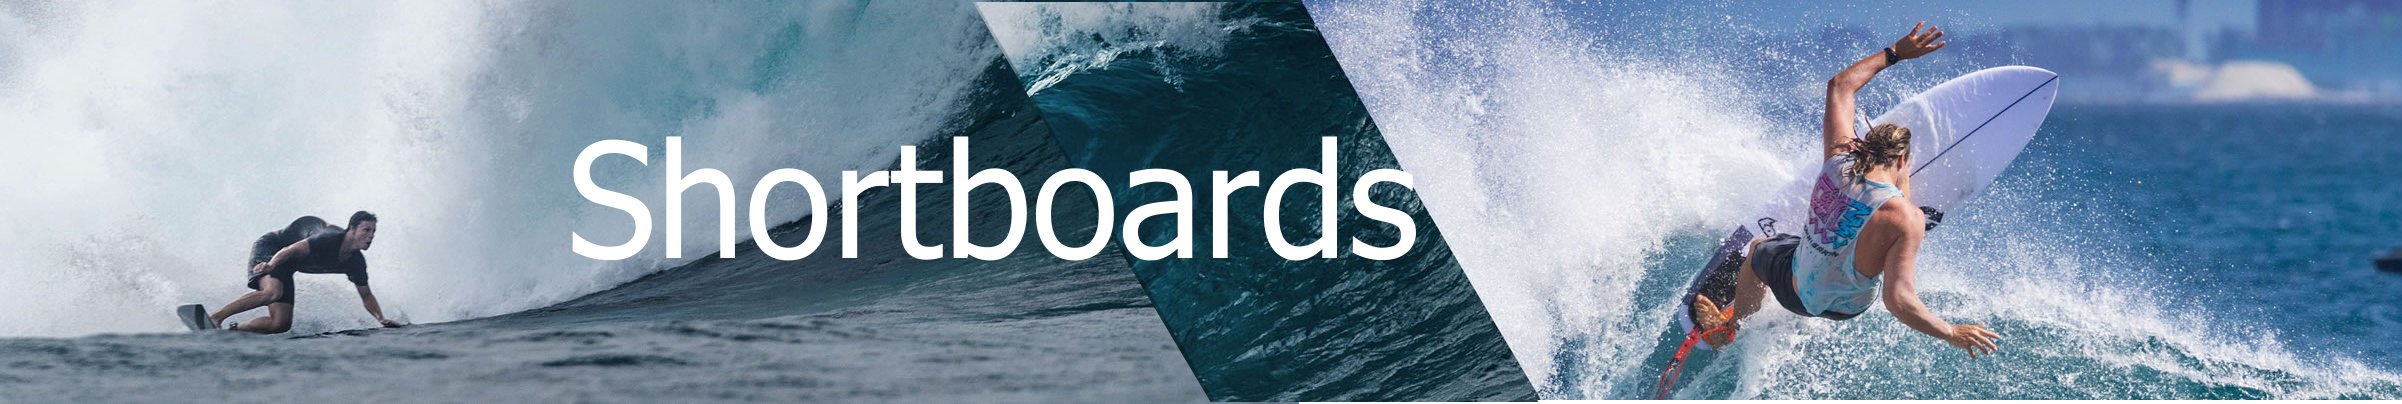 Shortboards buy online europe Header